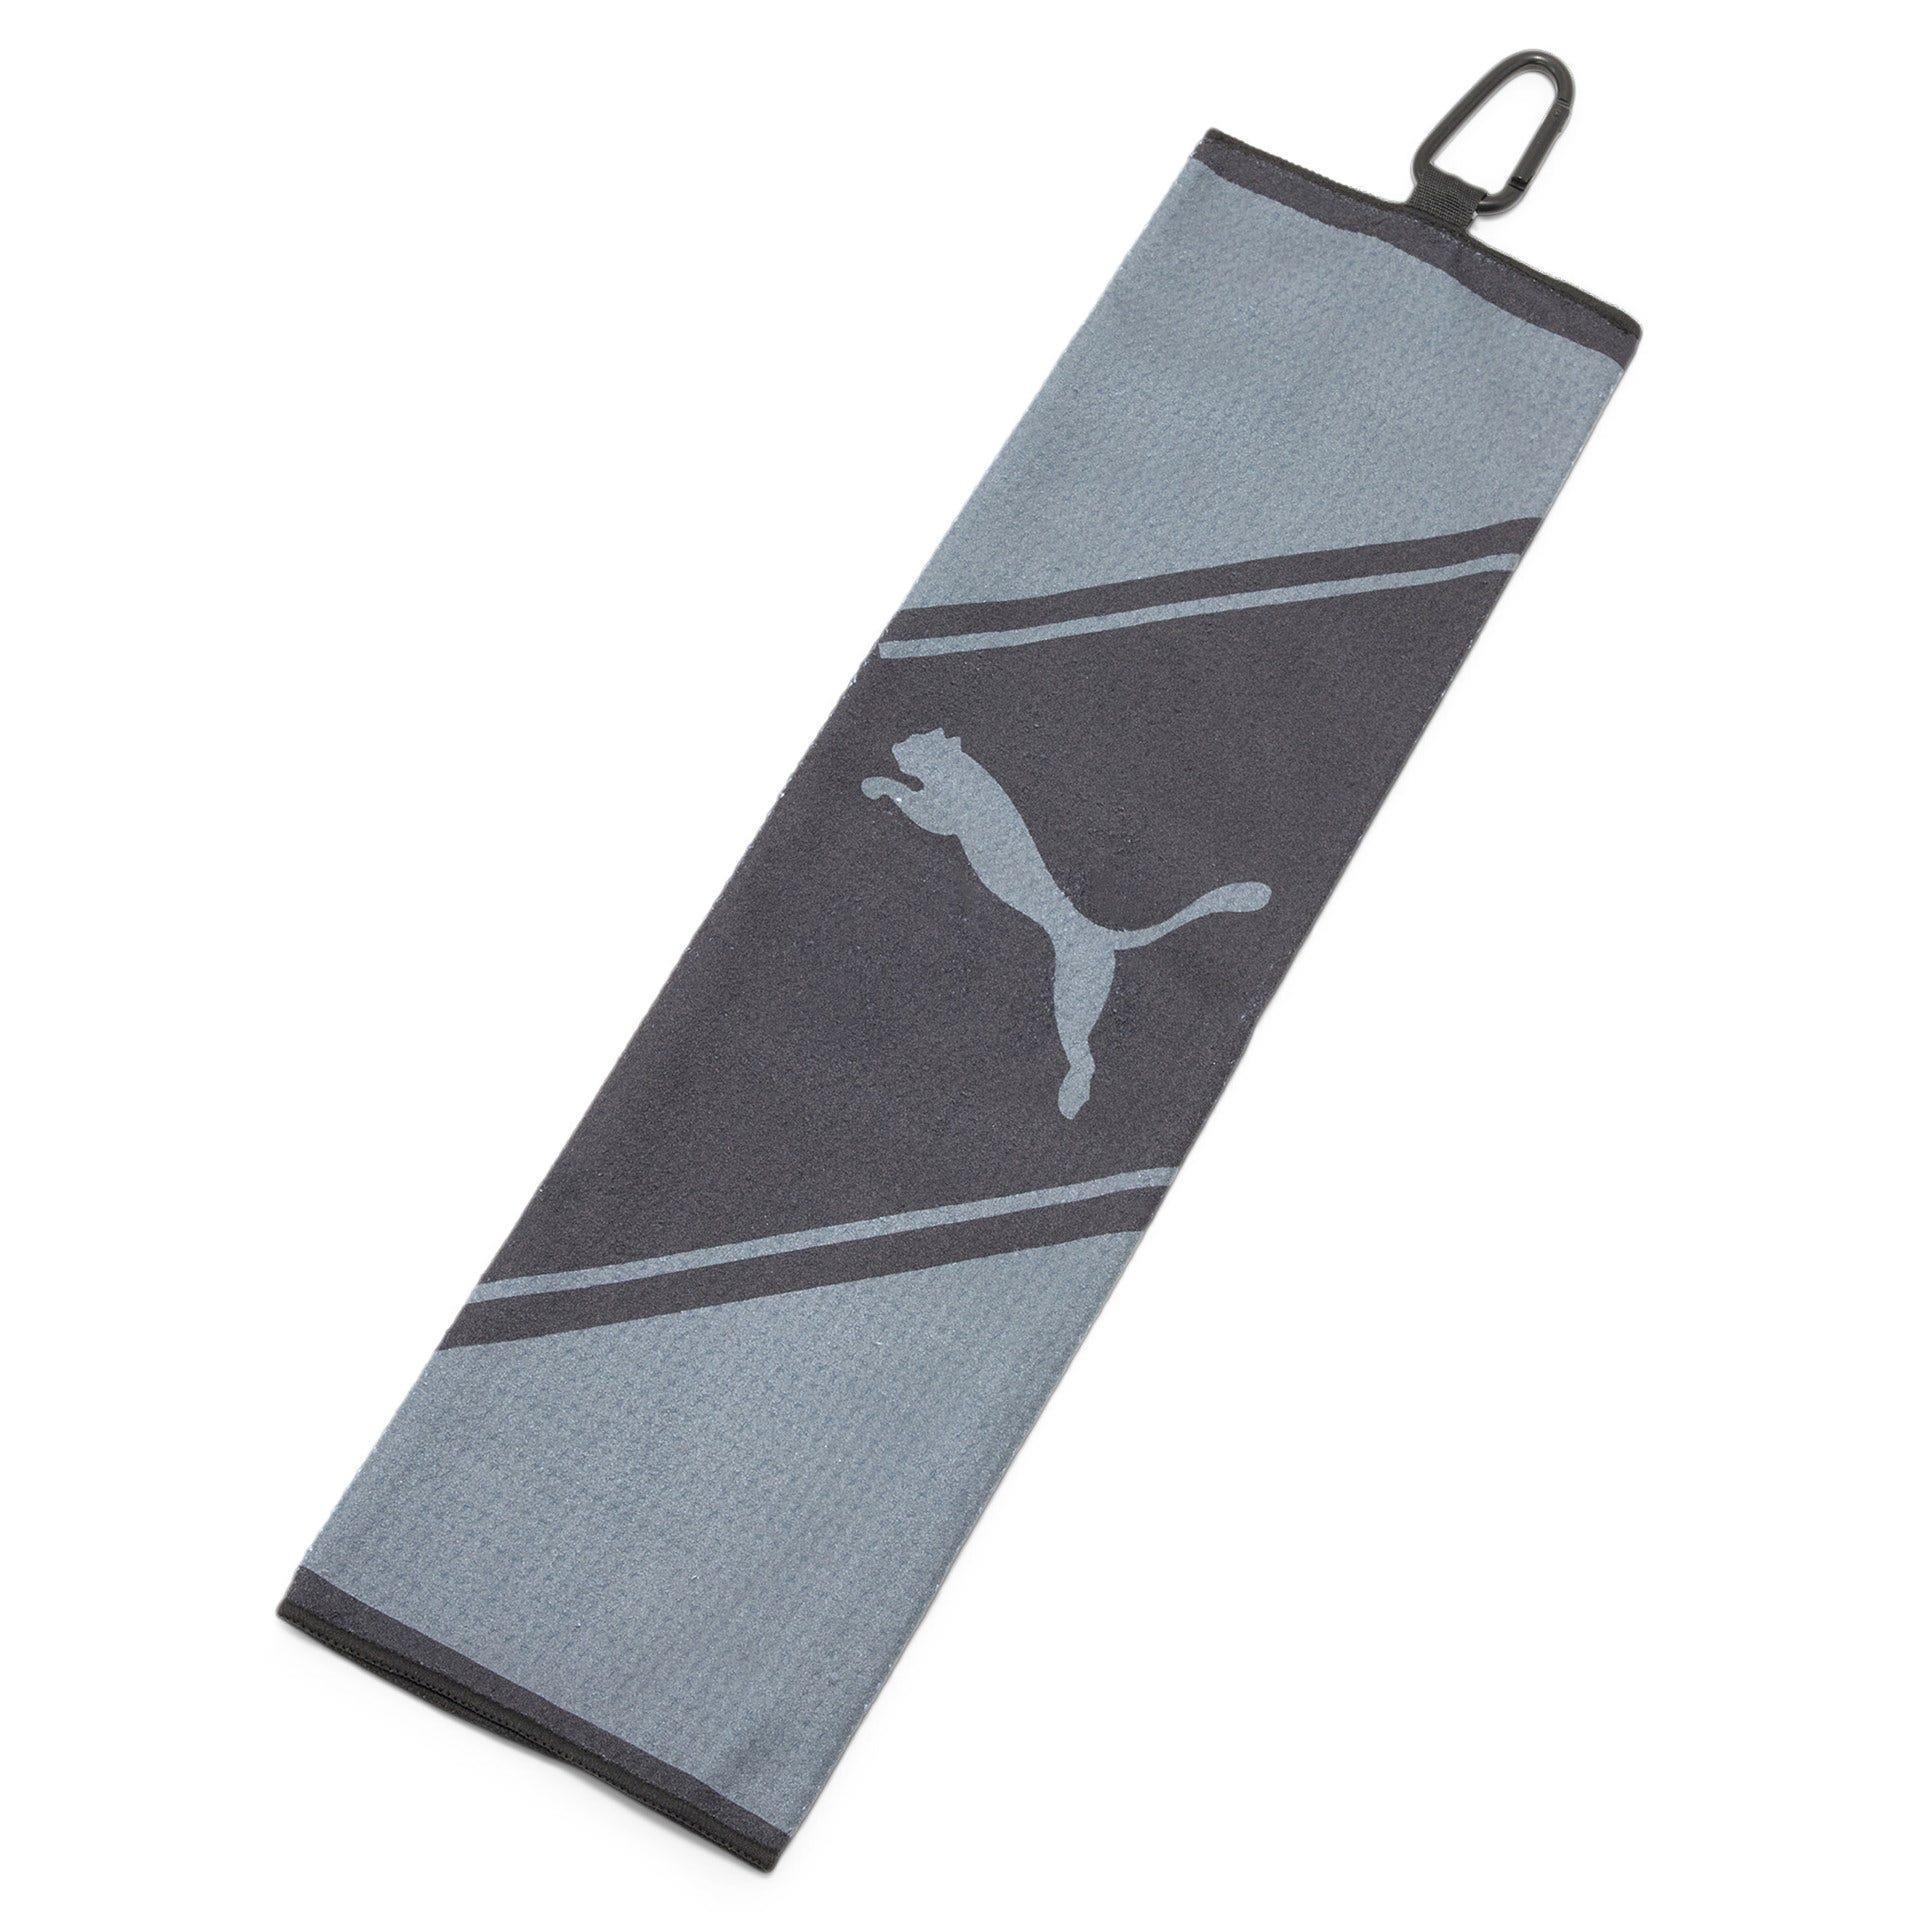 Puma Golf Tri Fold Towel - Black/Grey